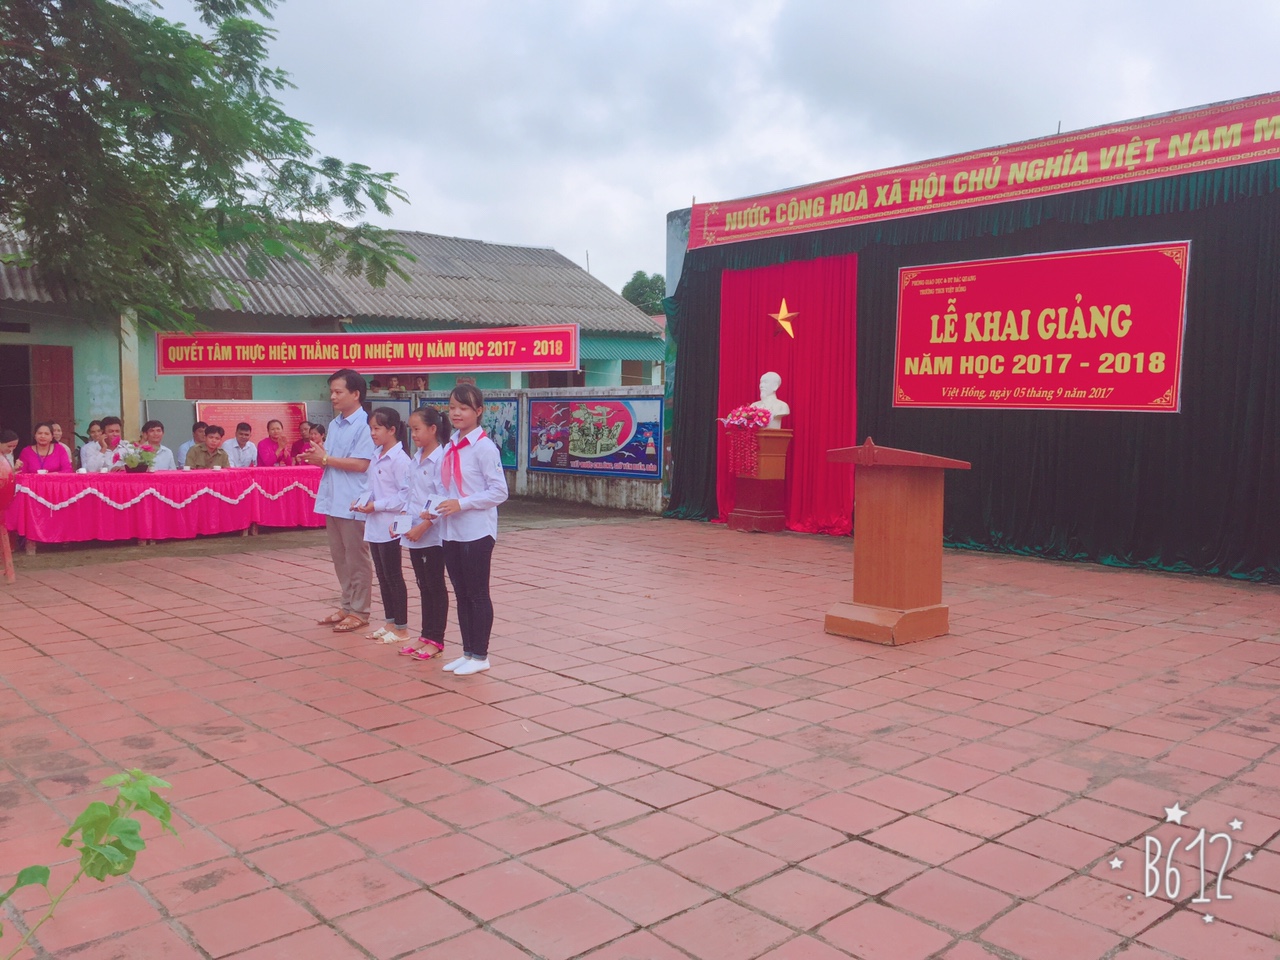 Lễ khai giảng Trung học cơ sở Việt Hồng năm học 2017 - 2018.